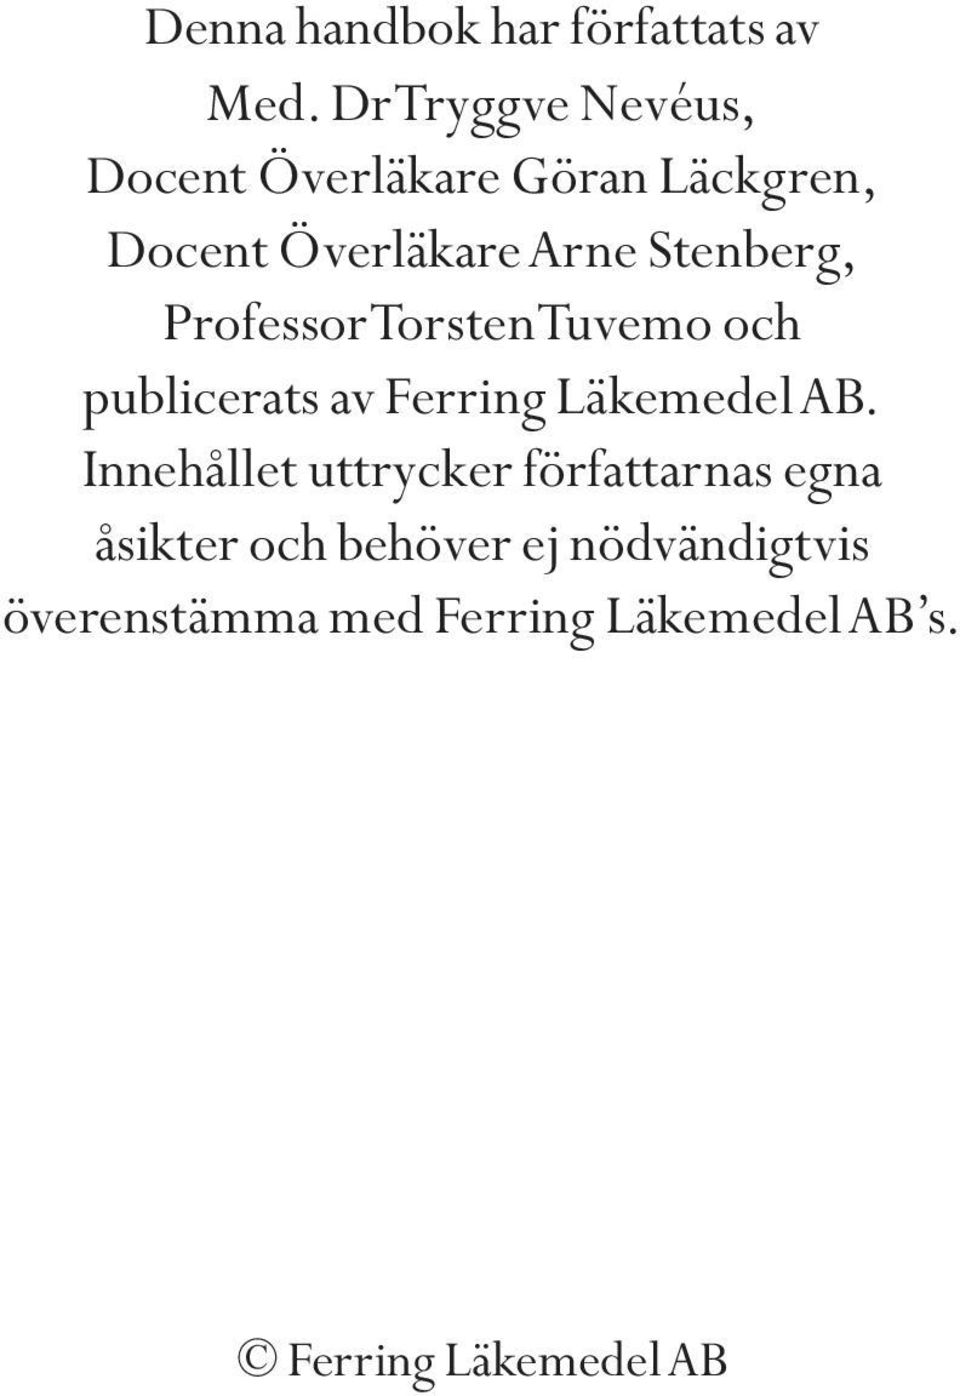 Stenberg, Professor Torsten Tuvemo och publicerats av Ferring Läkemedel AB.